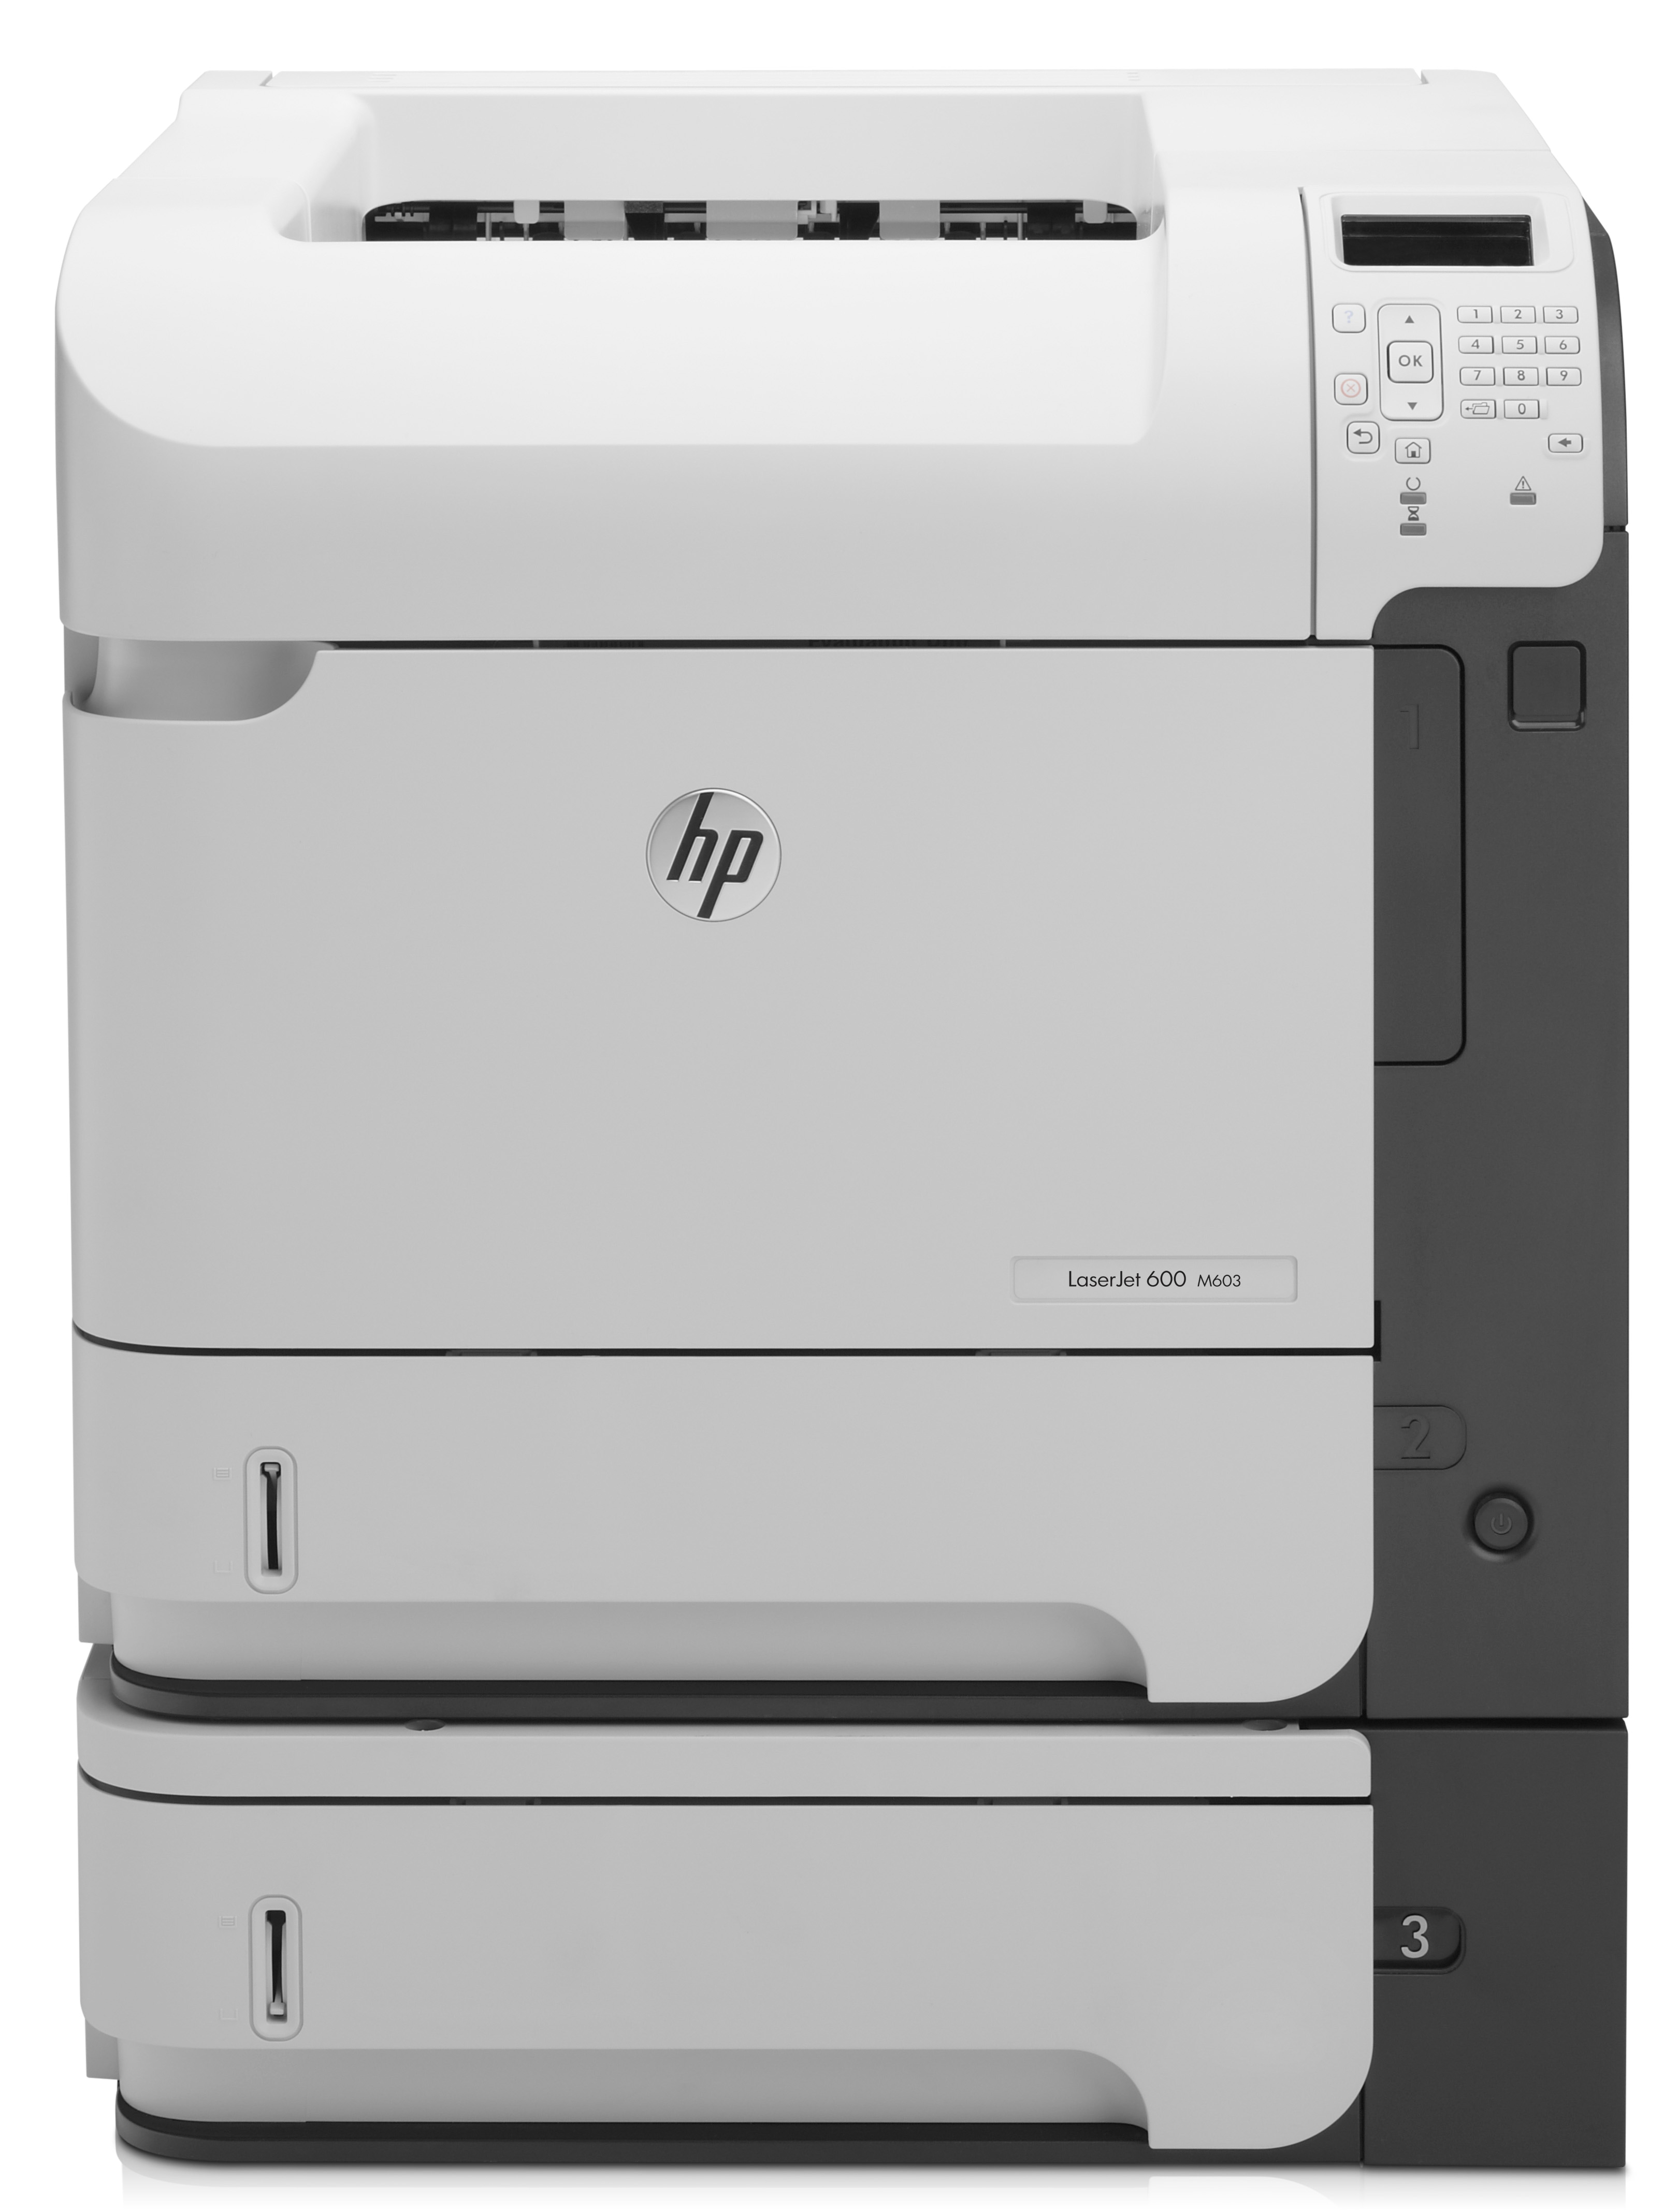 HP LaserJet Enterprise 600 Printer M603xh CE996A - Refurbished